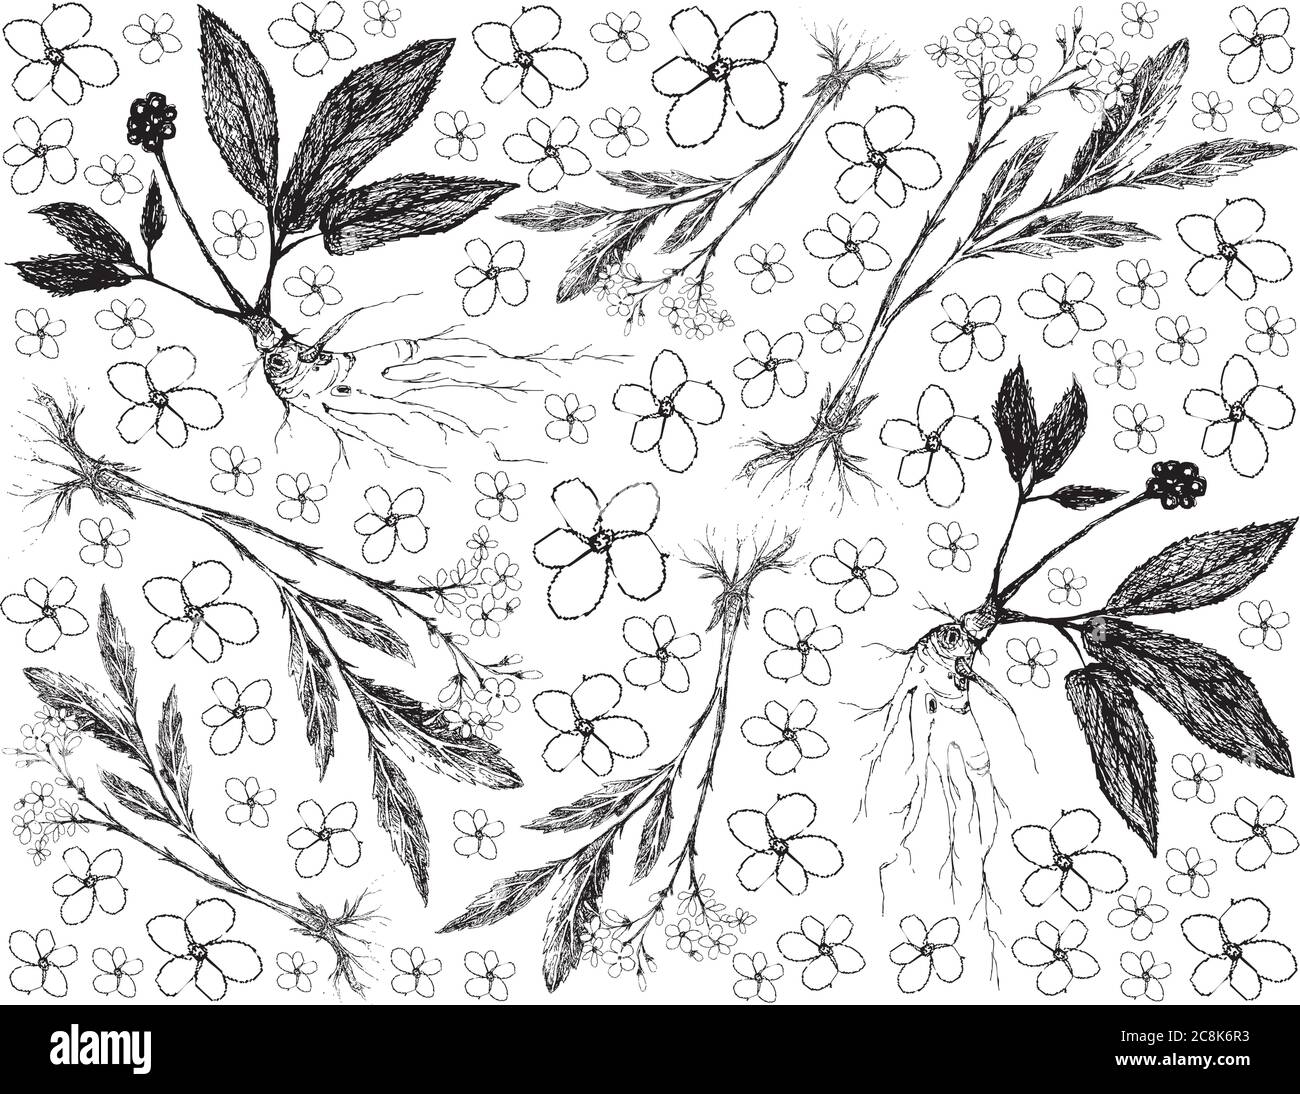 Kräuterblume und Pflanze, handgezeichneter Hintergrund von Baldrian und Ginseng Pflanzen für traditionelle Medizin verwendet. Stock Vektor